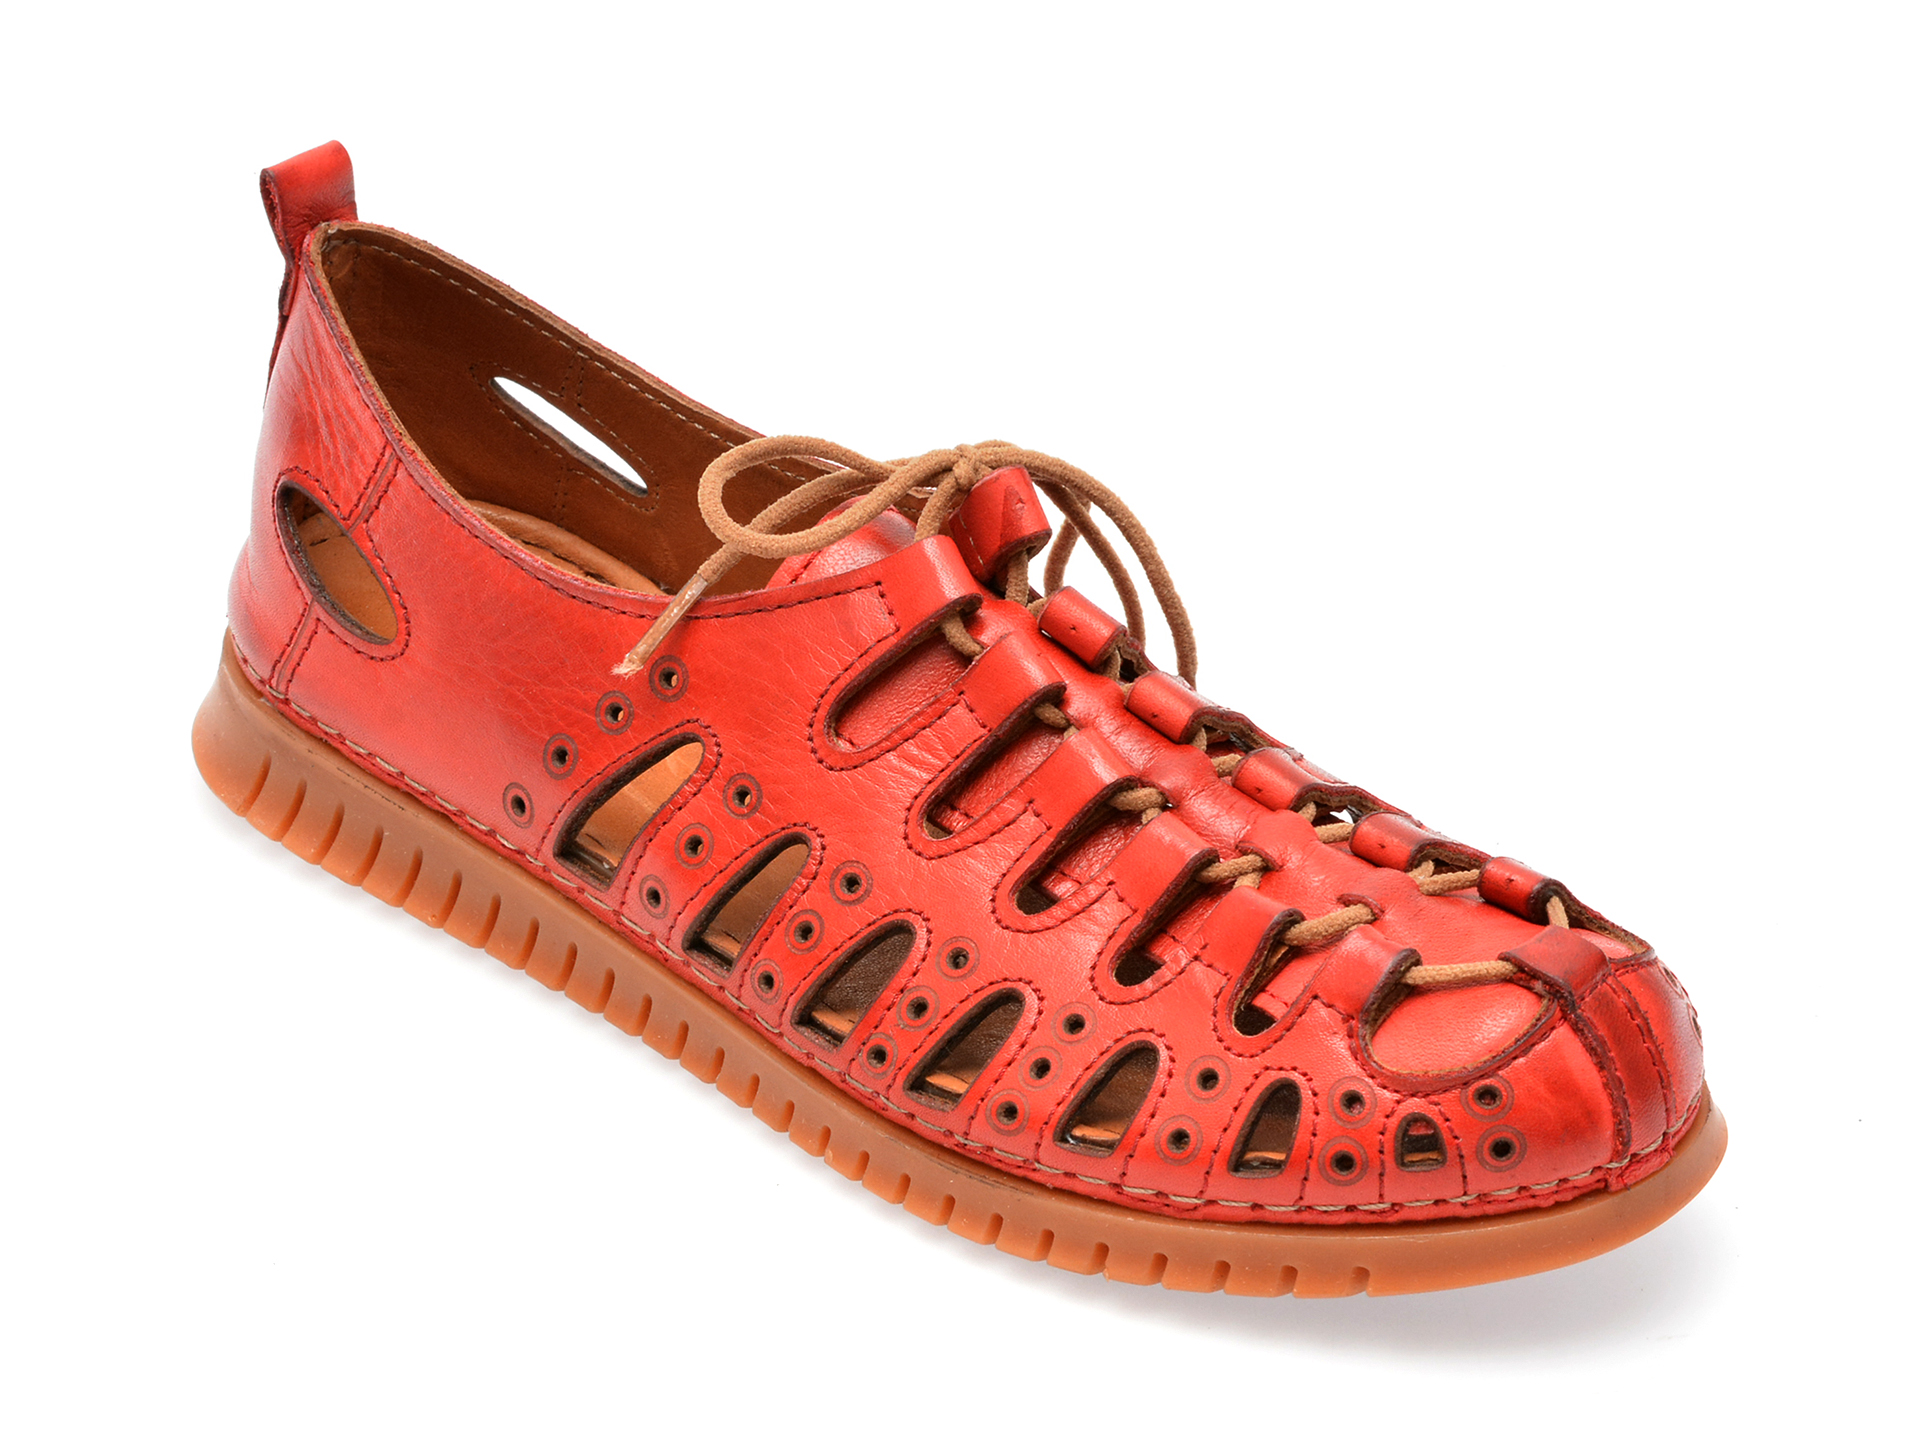 Pantofi FLAVIA PASSINI rosii, 5102, din piele naturala